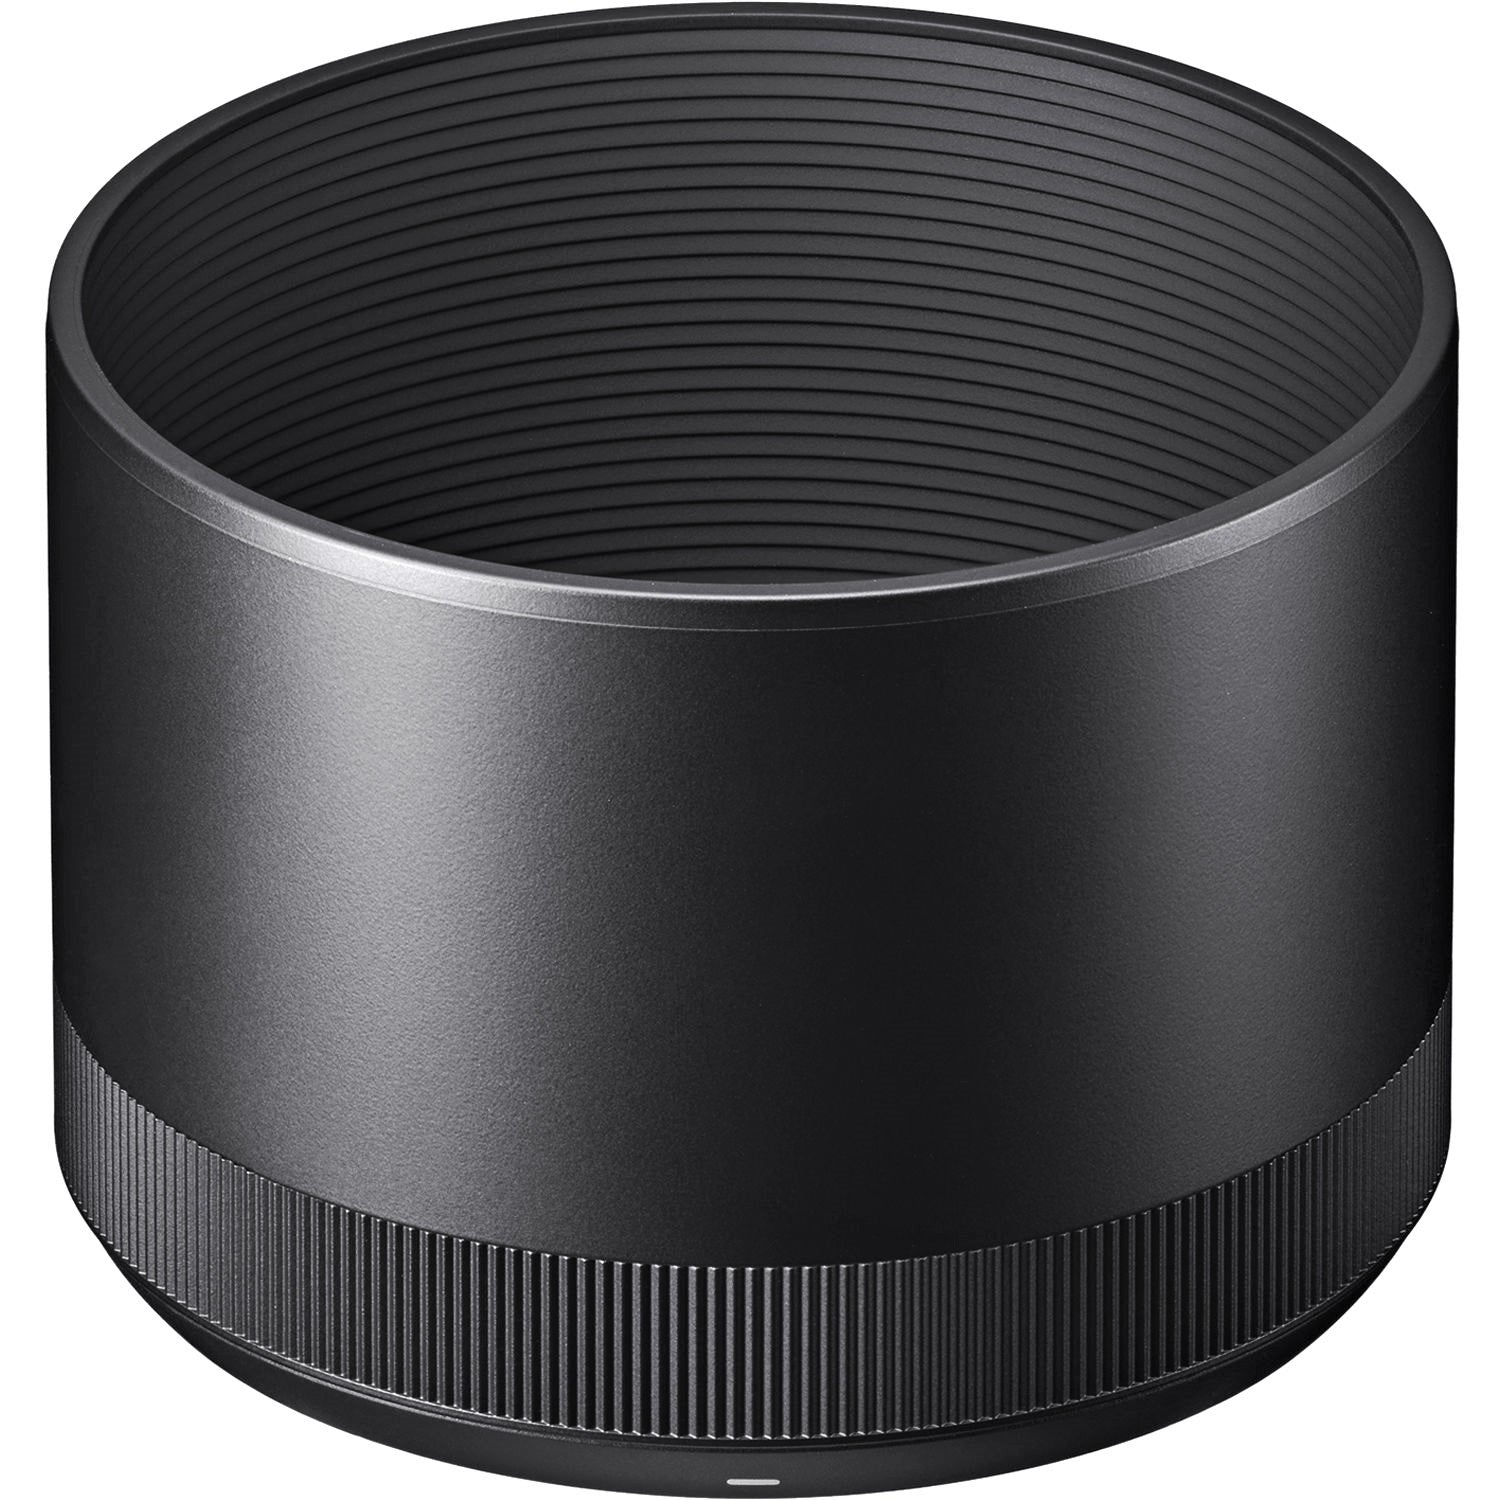 Sigma Lens Hood for 70mm F2.8 DG Macro Art Lens